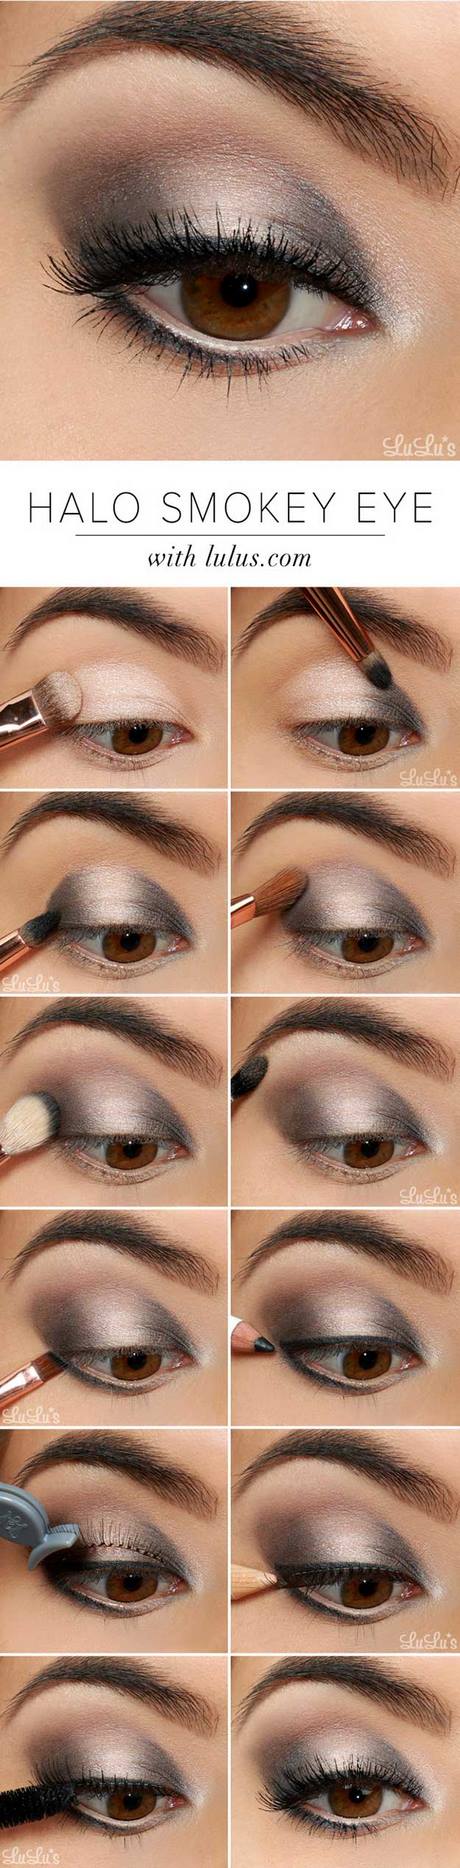 eye-makeup-tutorial-for-blue-eyes-90_5 Oogmakeup les voor blauwe ogen